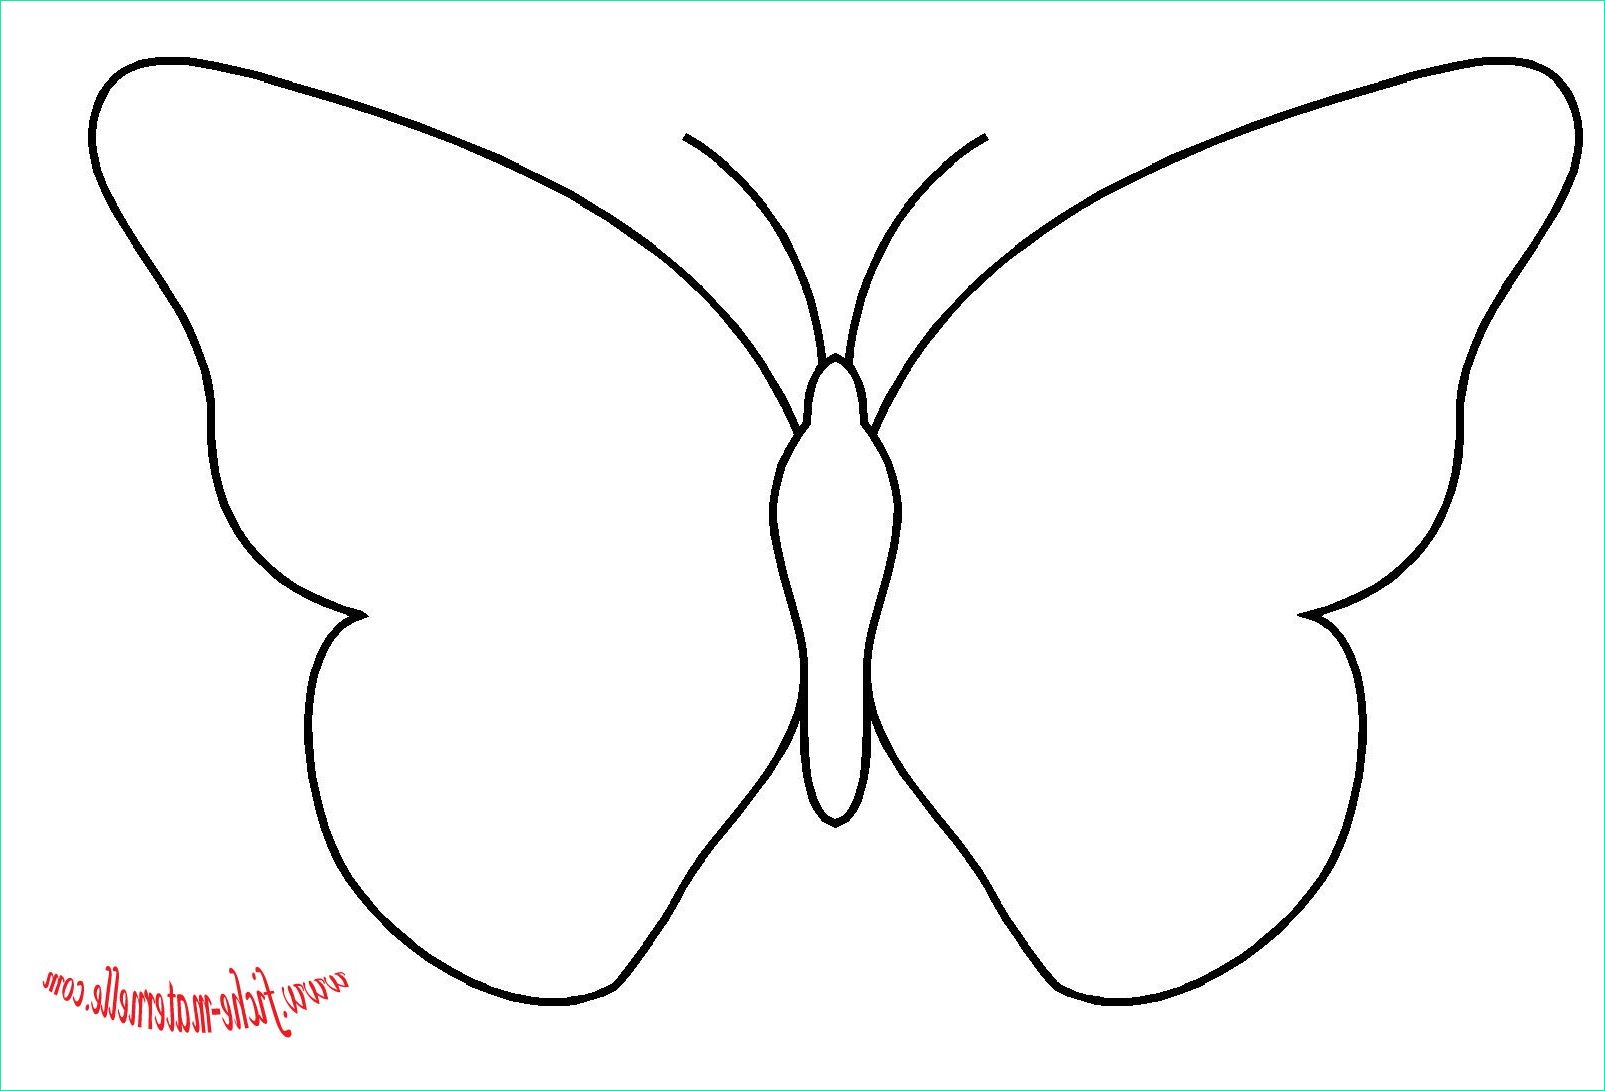 Modele Papillon Gratuit A Imprimer Élégant Images Meilleur De Coloriage Noeud Papillon Imprimer